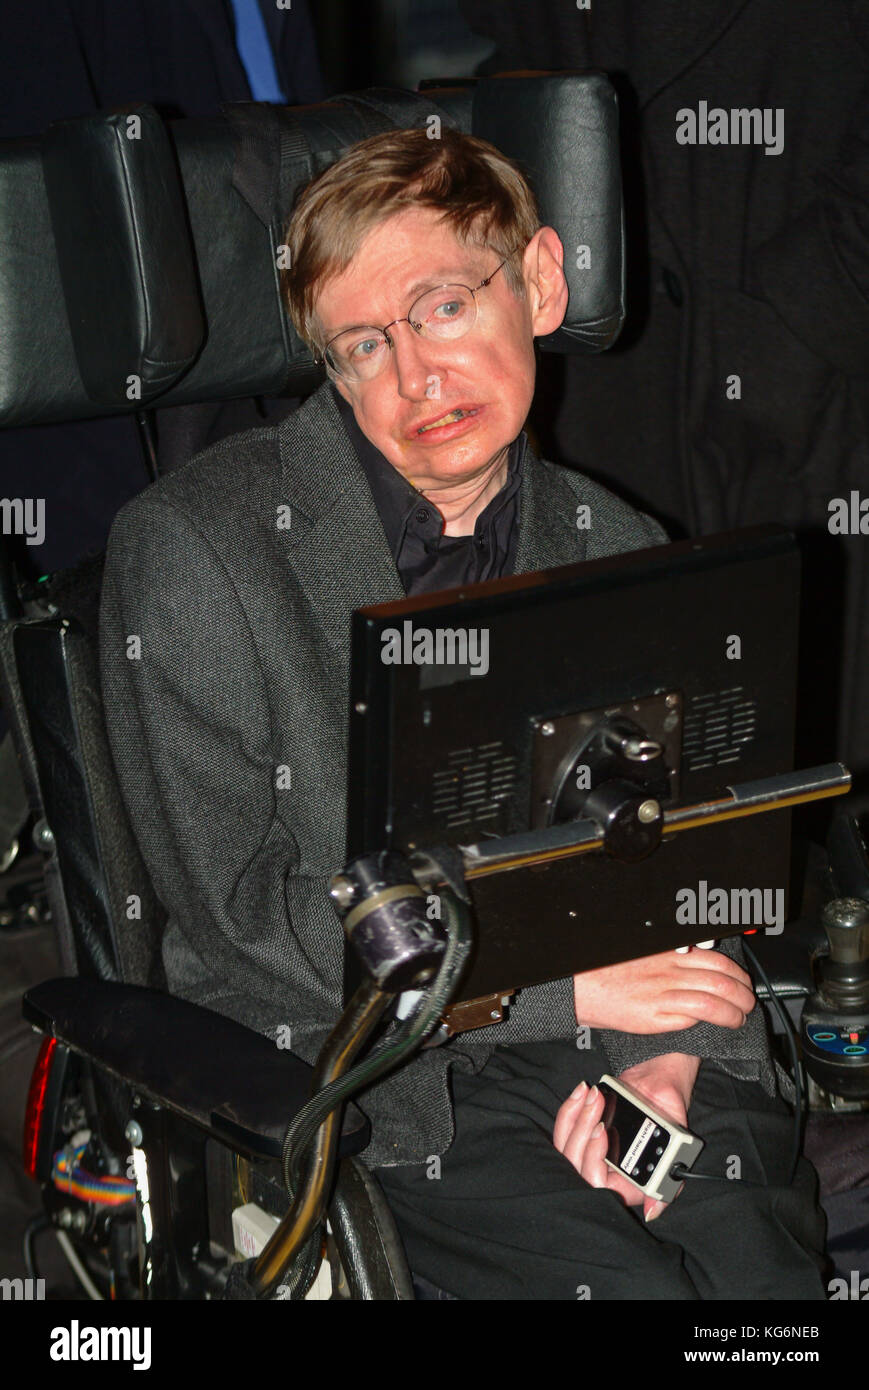 El profesor Stephen Hawking científico ,muere serenamente en su casa el 13 de marzo de 2018 en Cambridge, Inglaterra. . Imagen de archivo de 2004, Londres, Inglaterra, Reino Unido Foto de stock